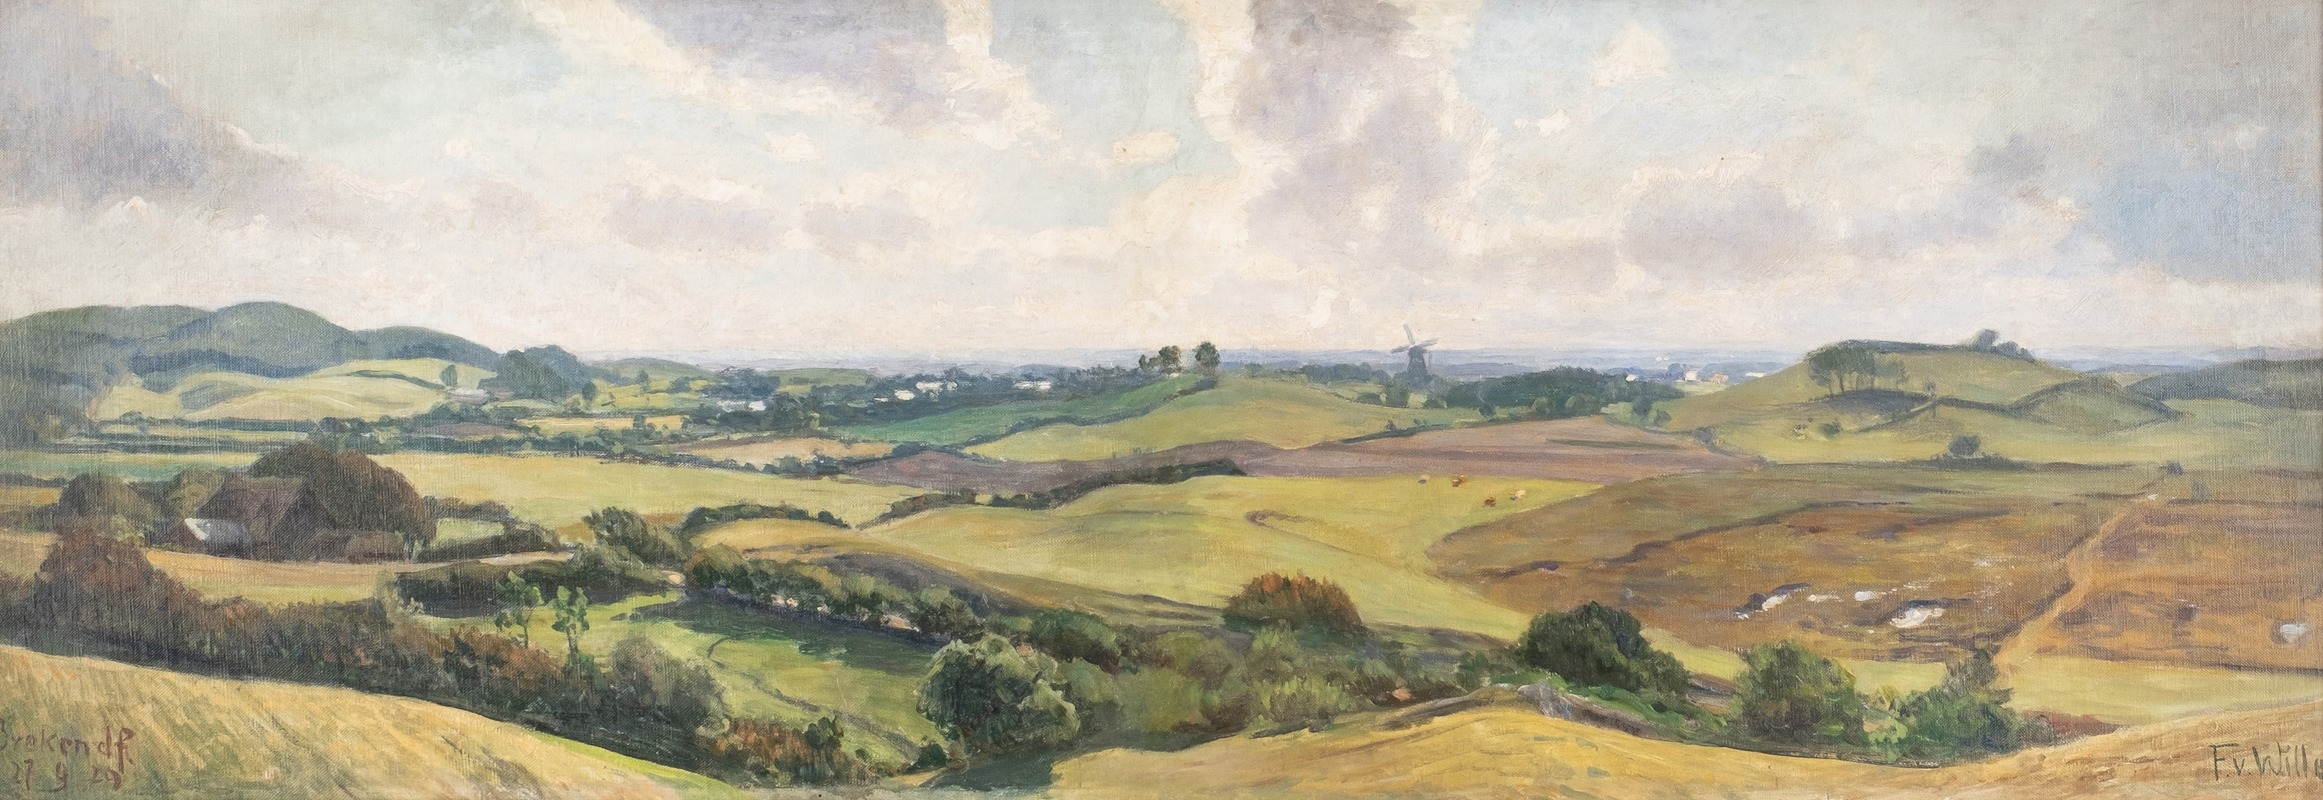 Fritz Von Wille - View in the valley near Brekendorf